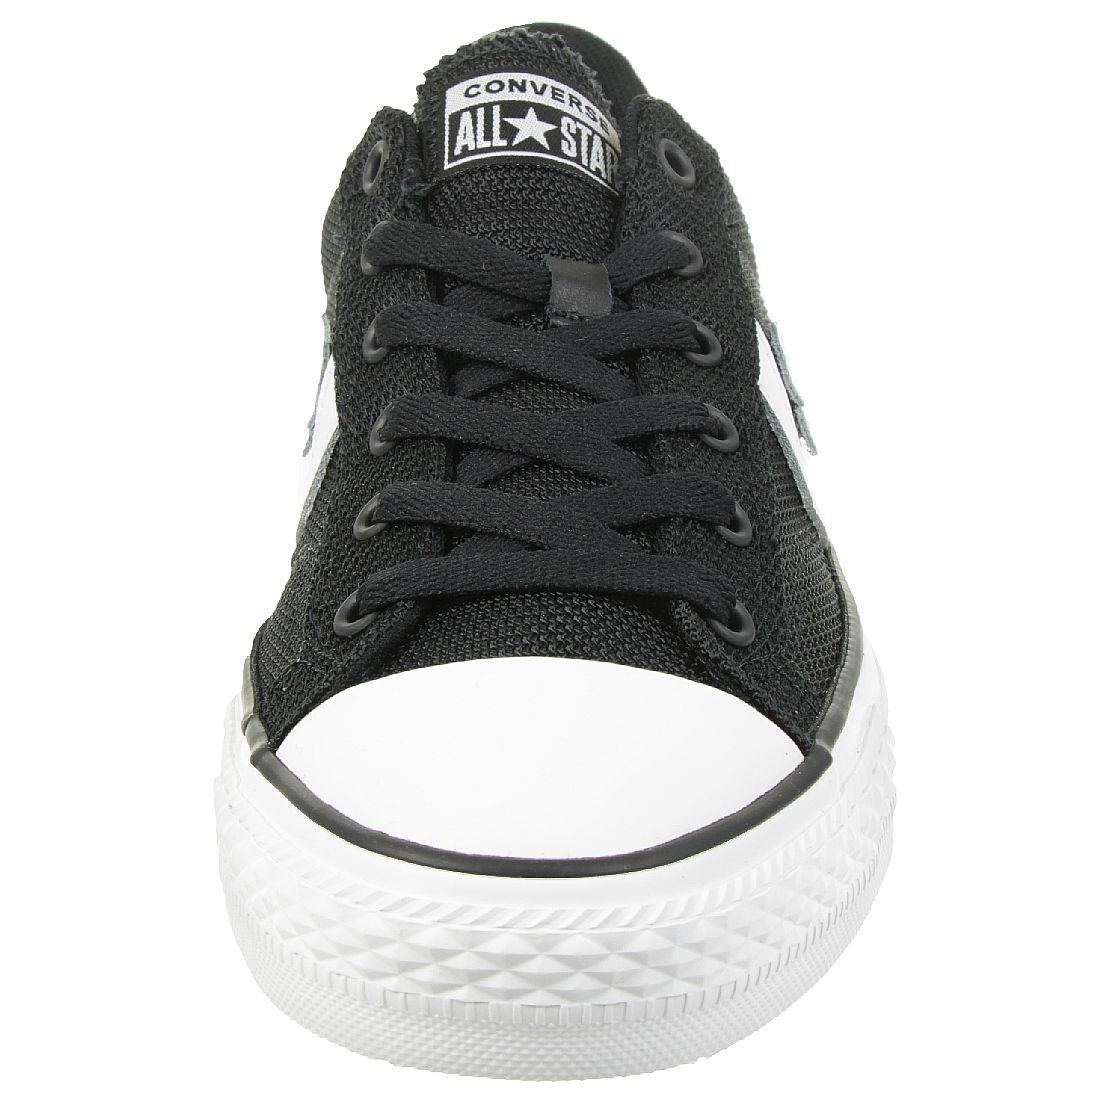 Converse STAR PLAYER OX Schuhe Sneaker 160581C schwarz